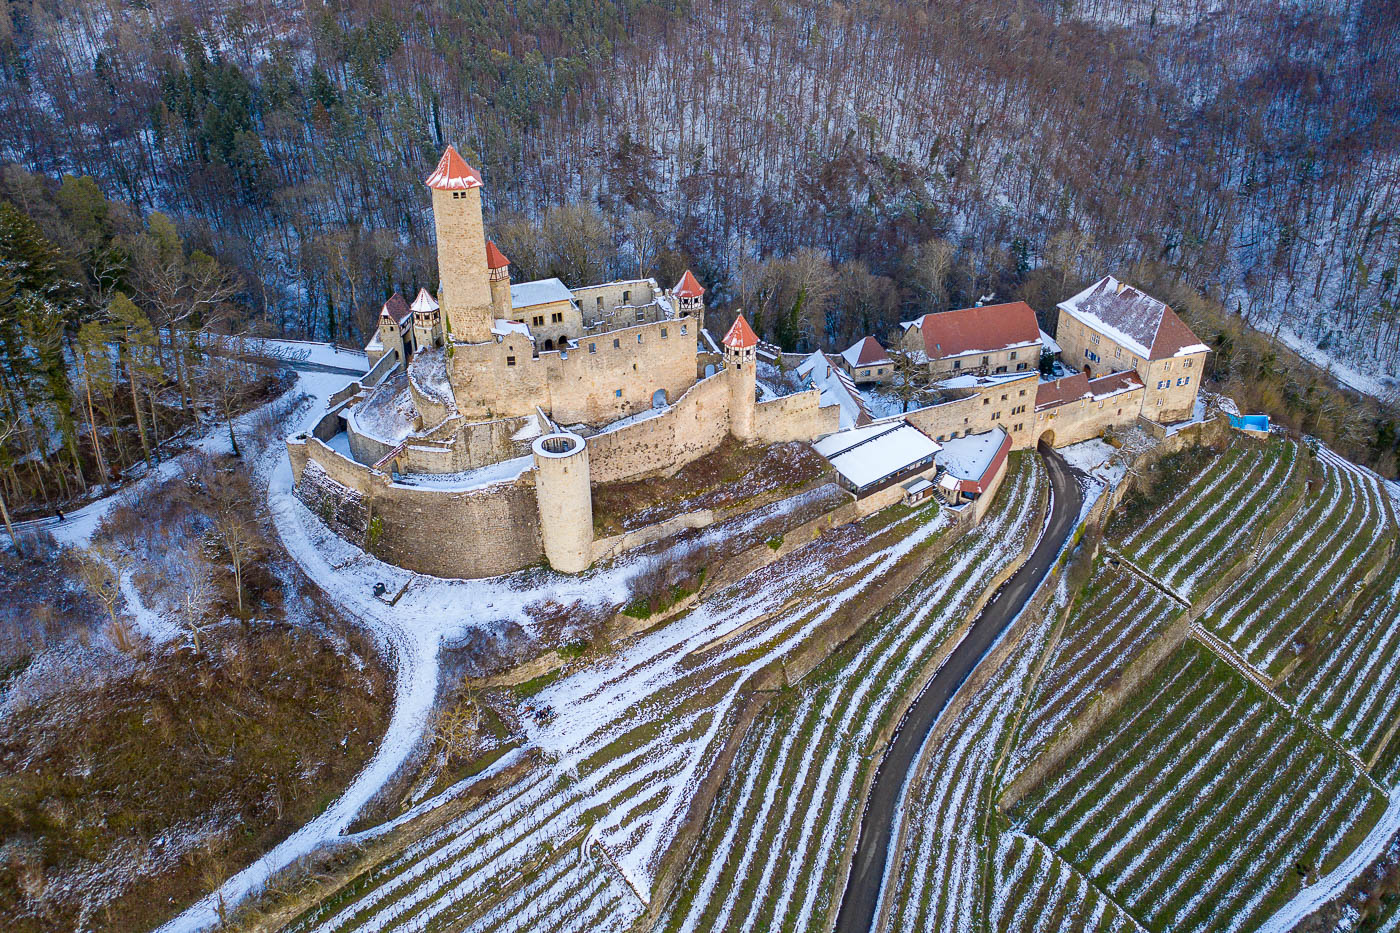 Burg Hornberg im Winter